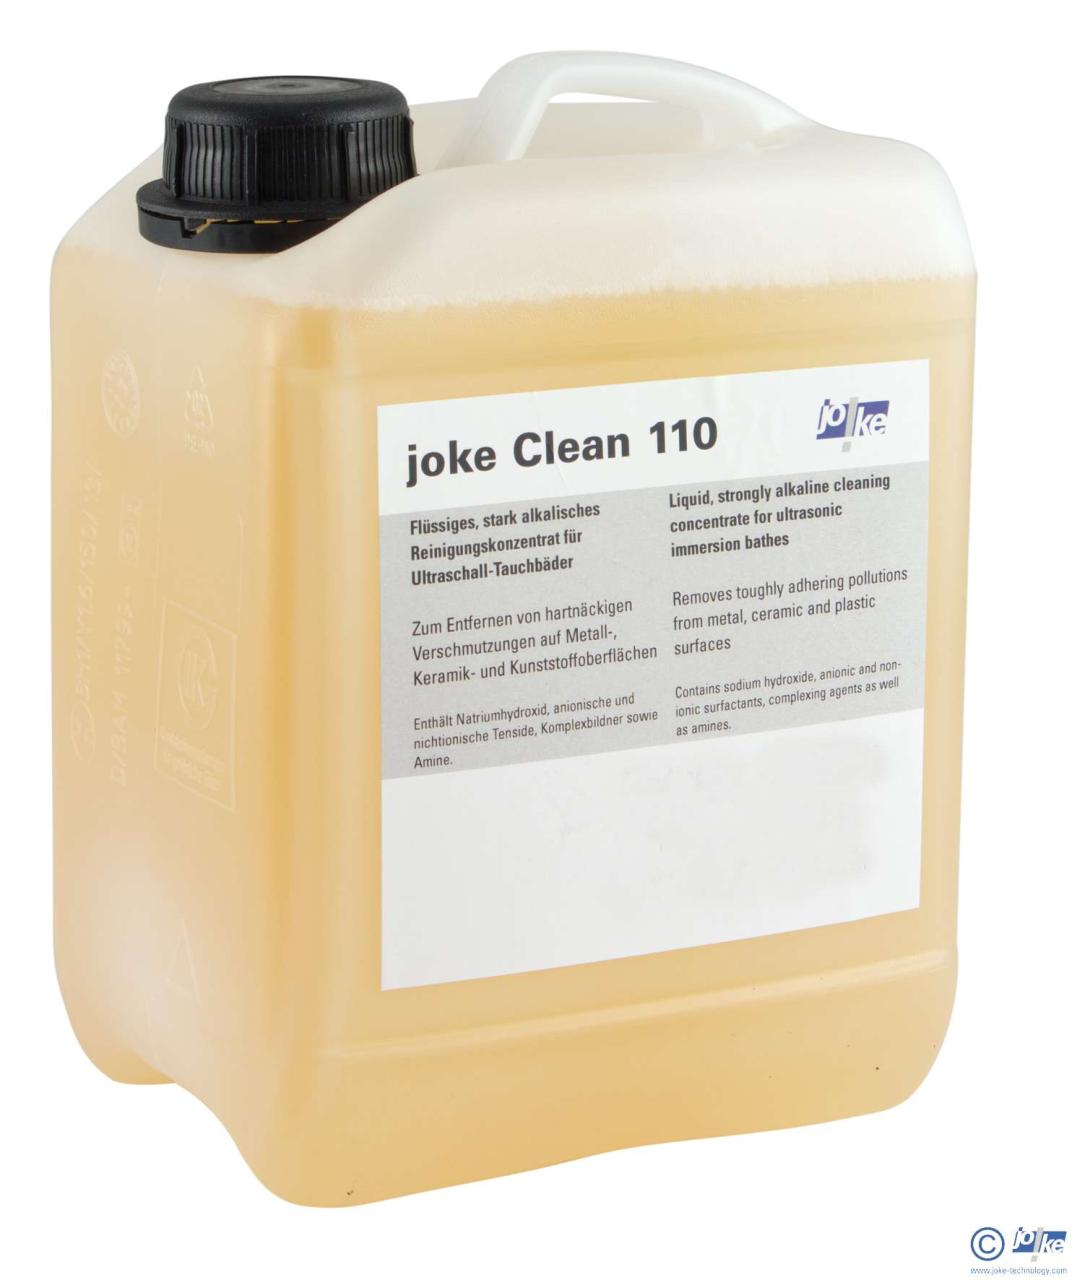 0666103-1_joke-clean-110